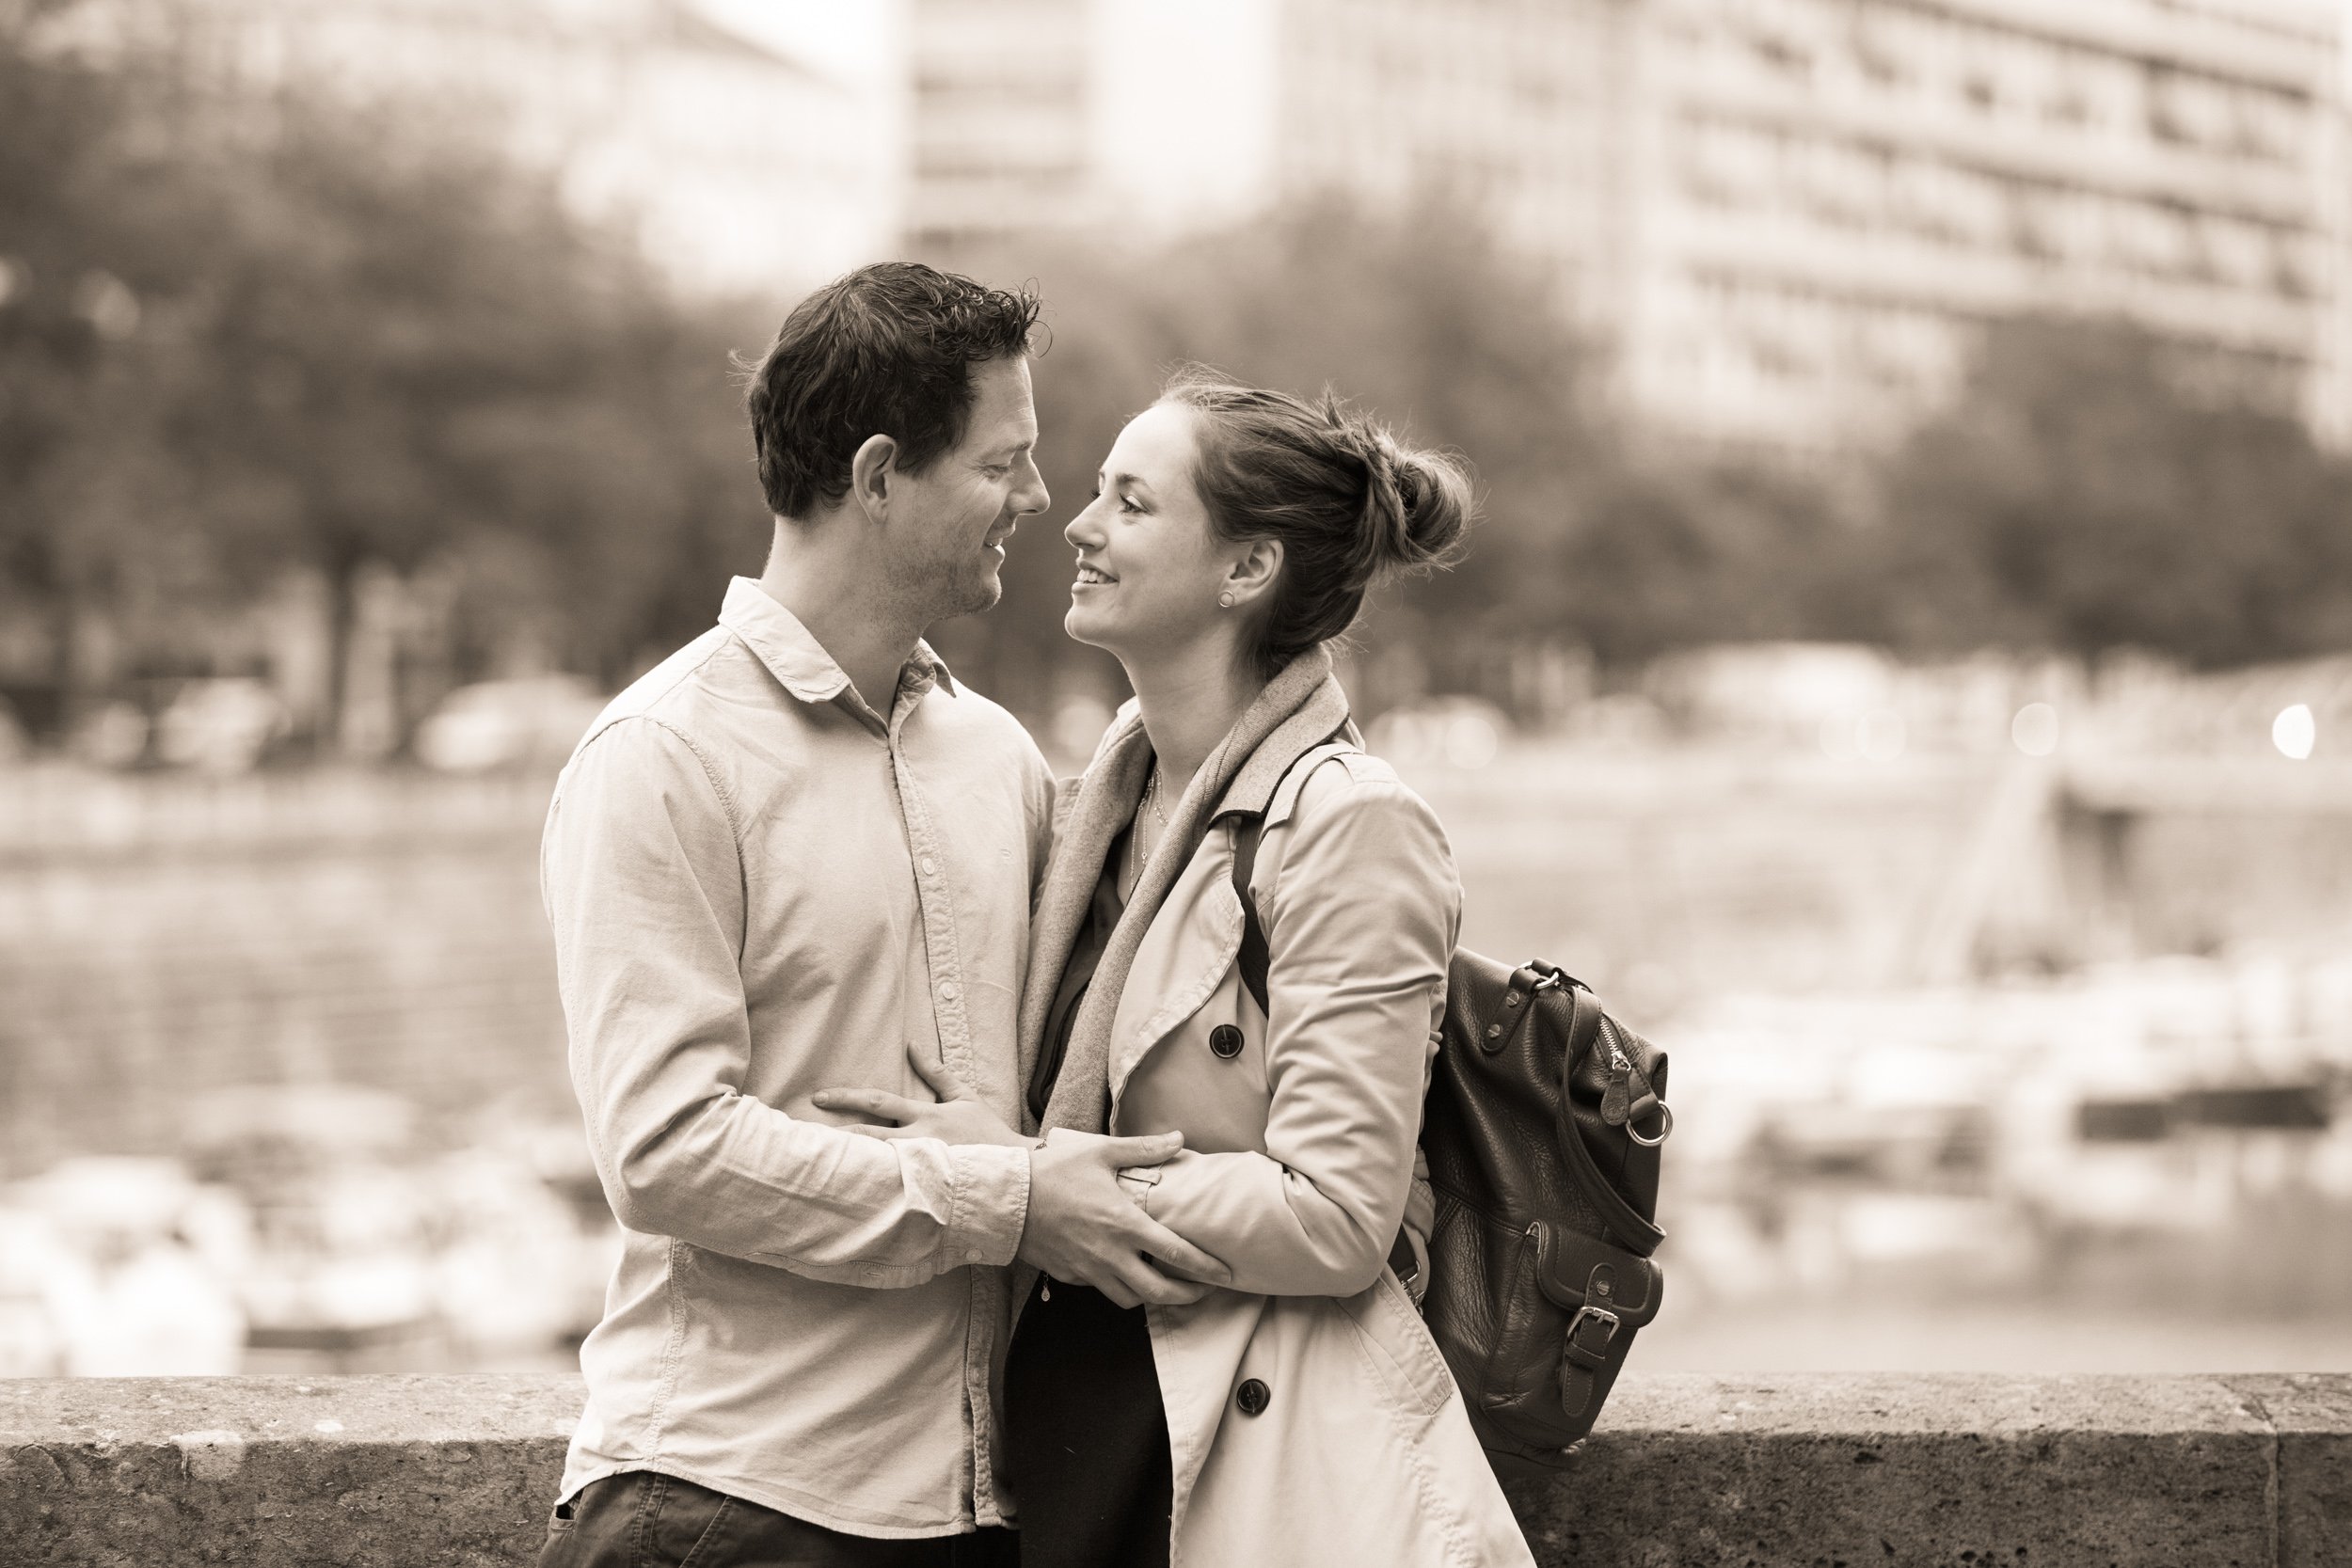  couple-embrace-at-paris-dock 